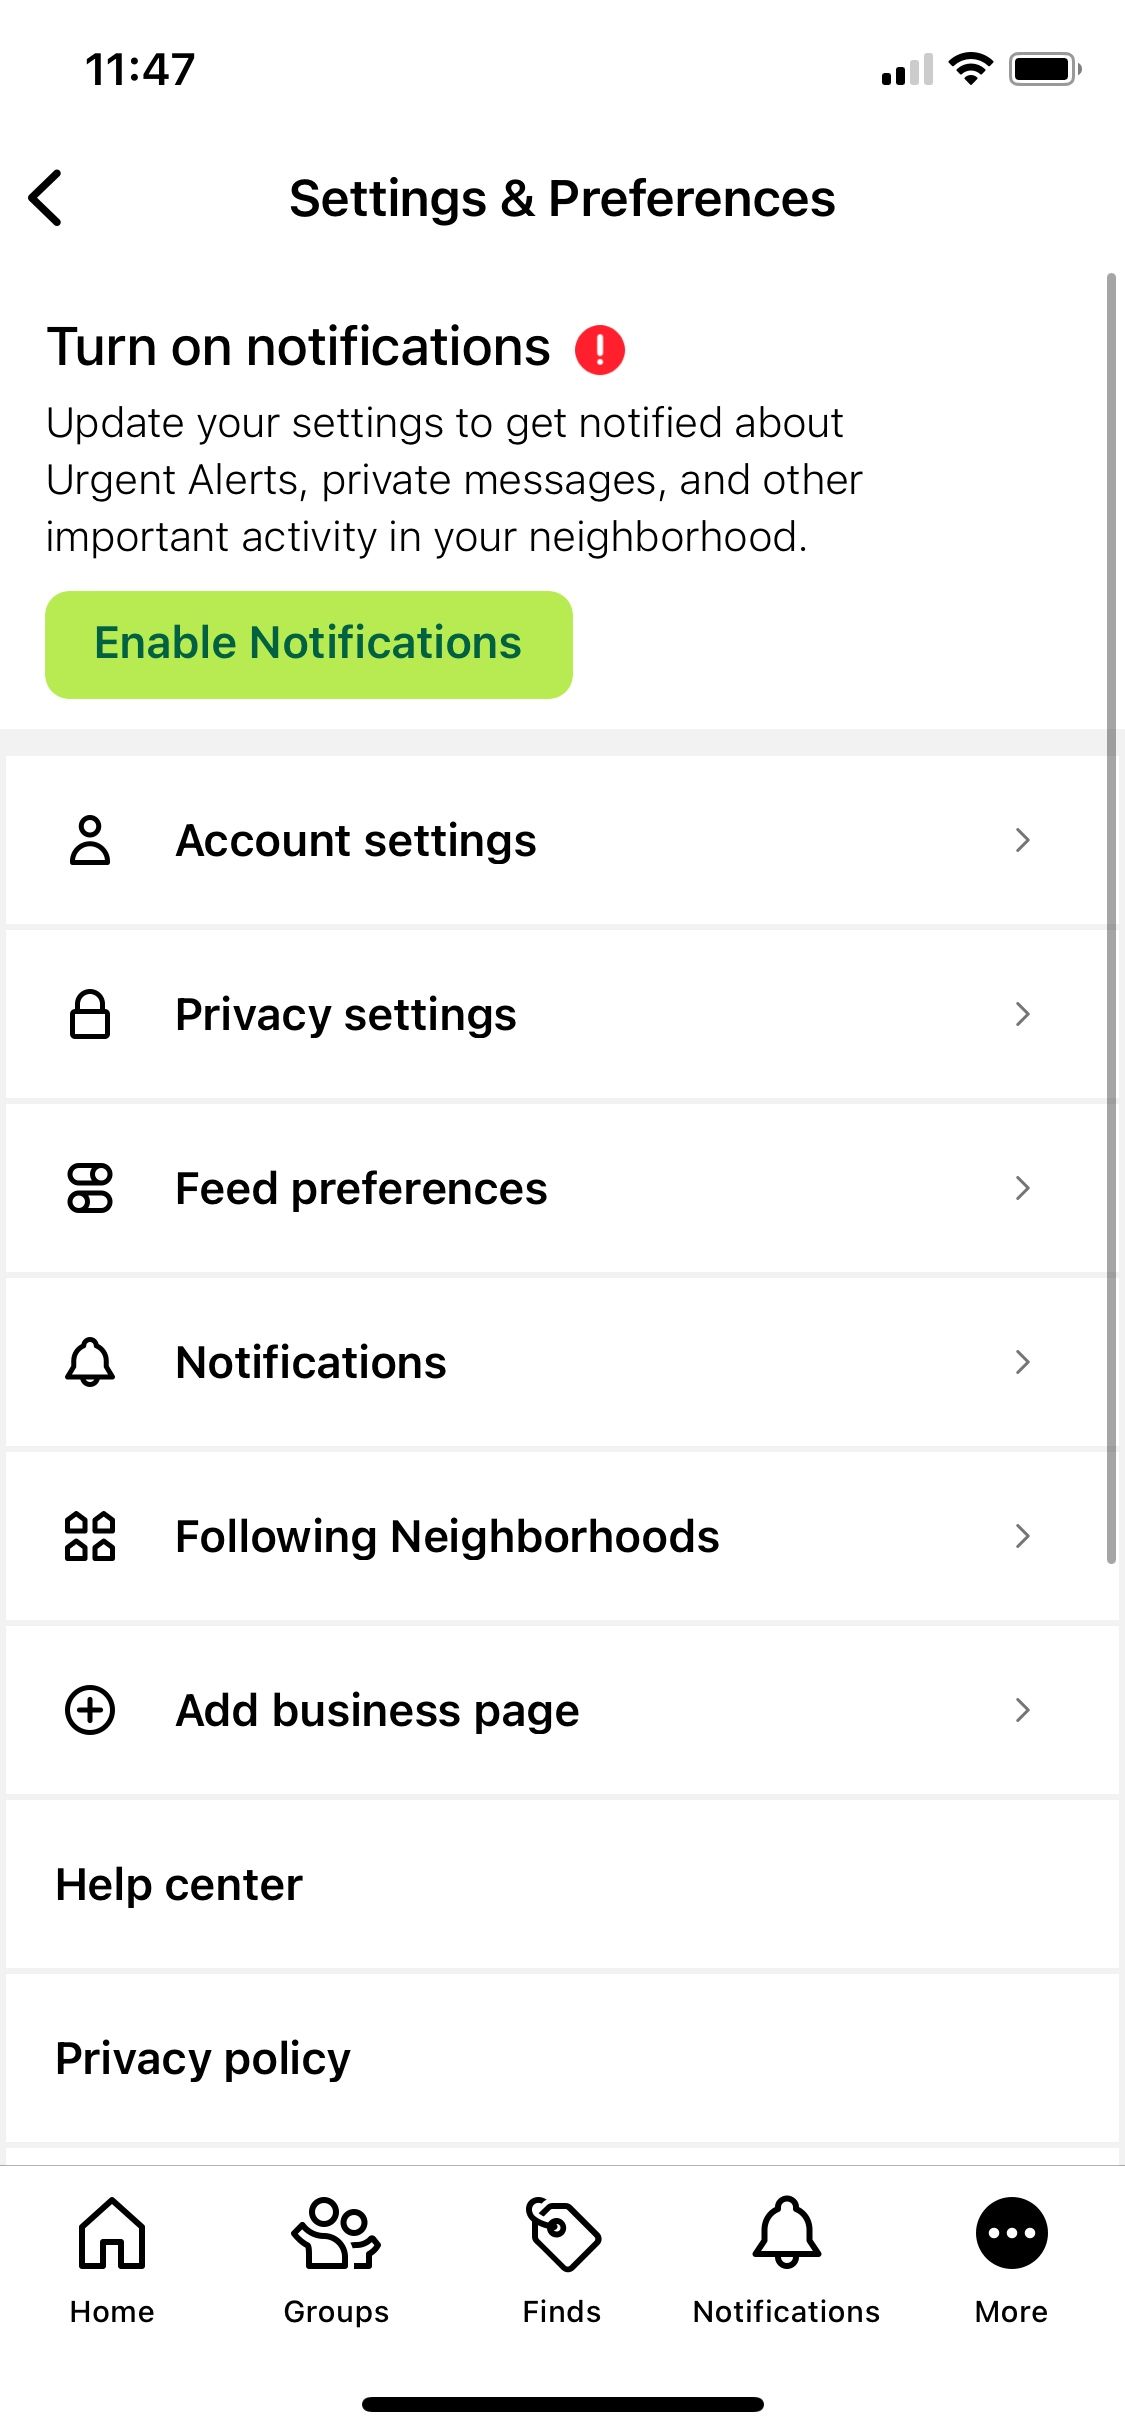 Next door app's notification page